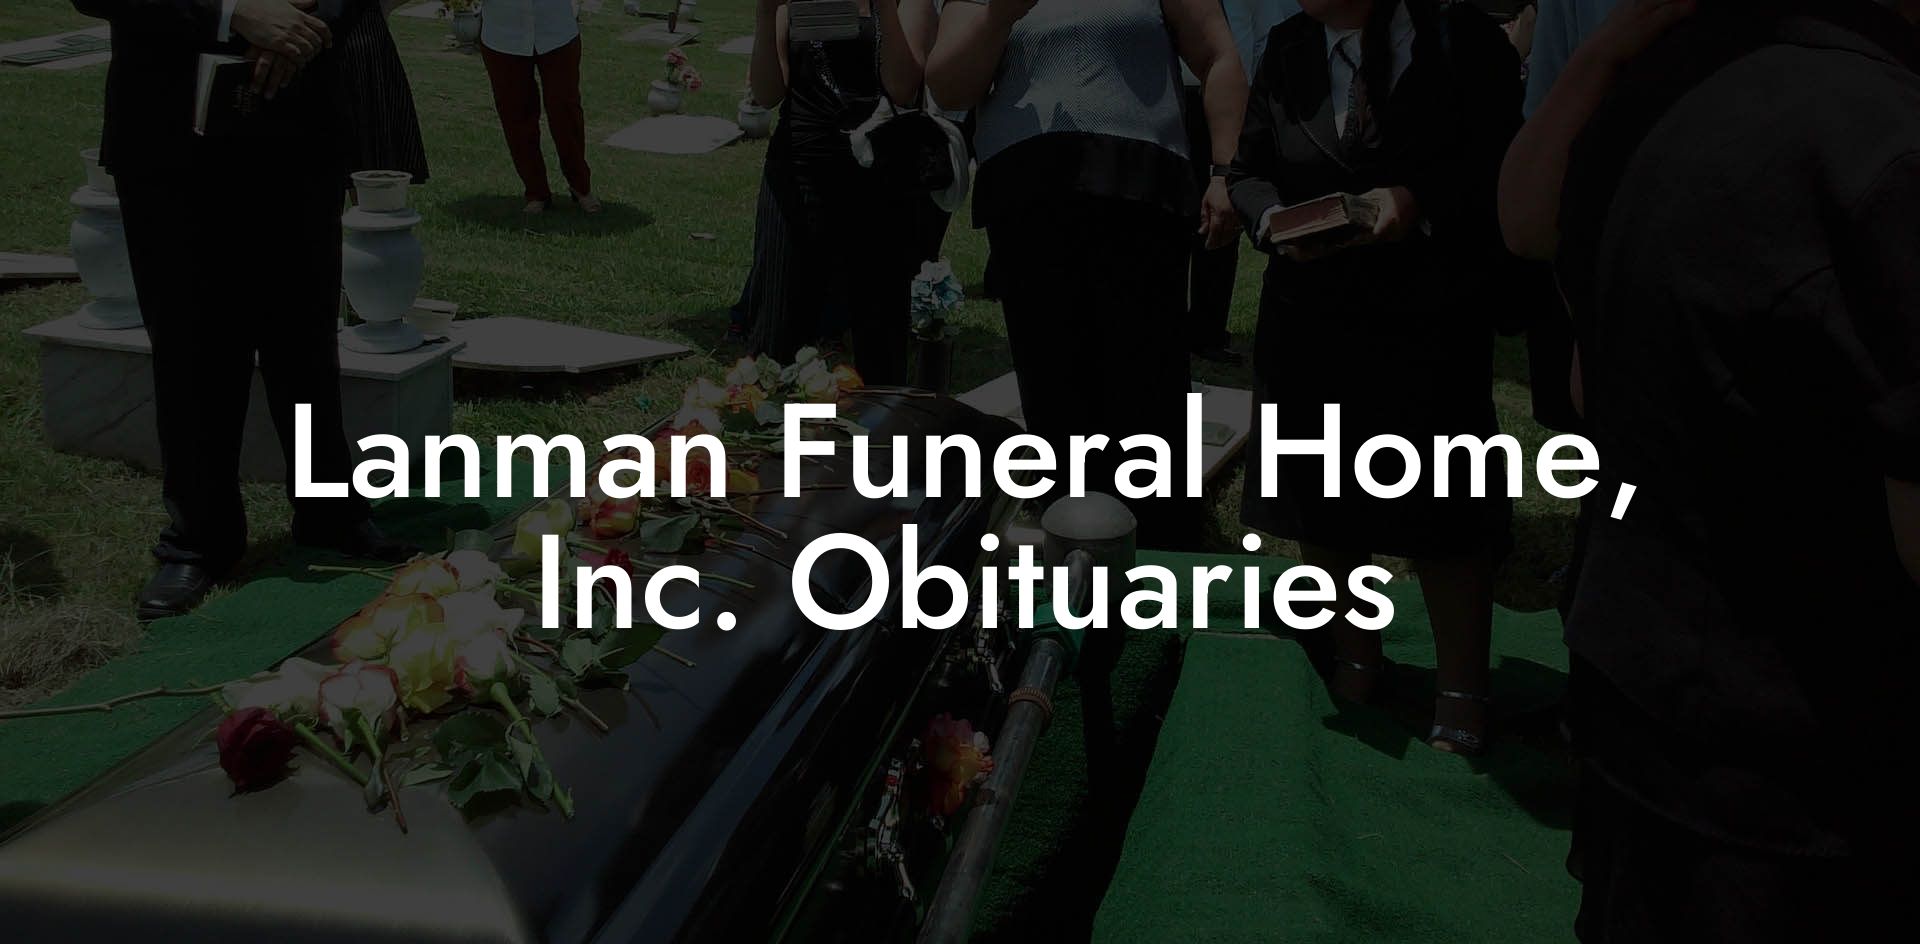 Lanman Funeral Home, Inc. Obituaries